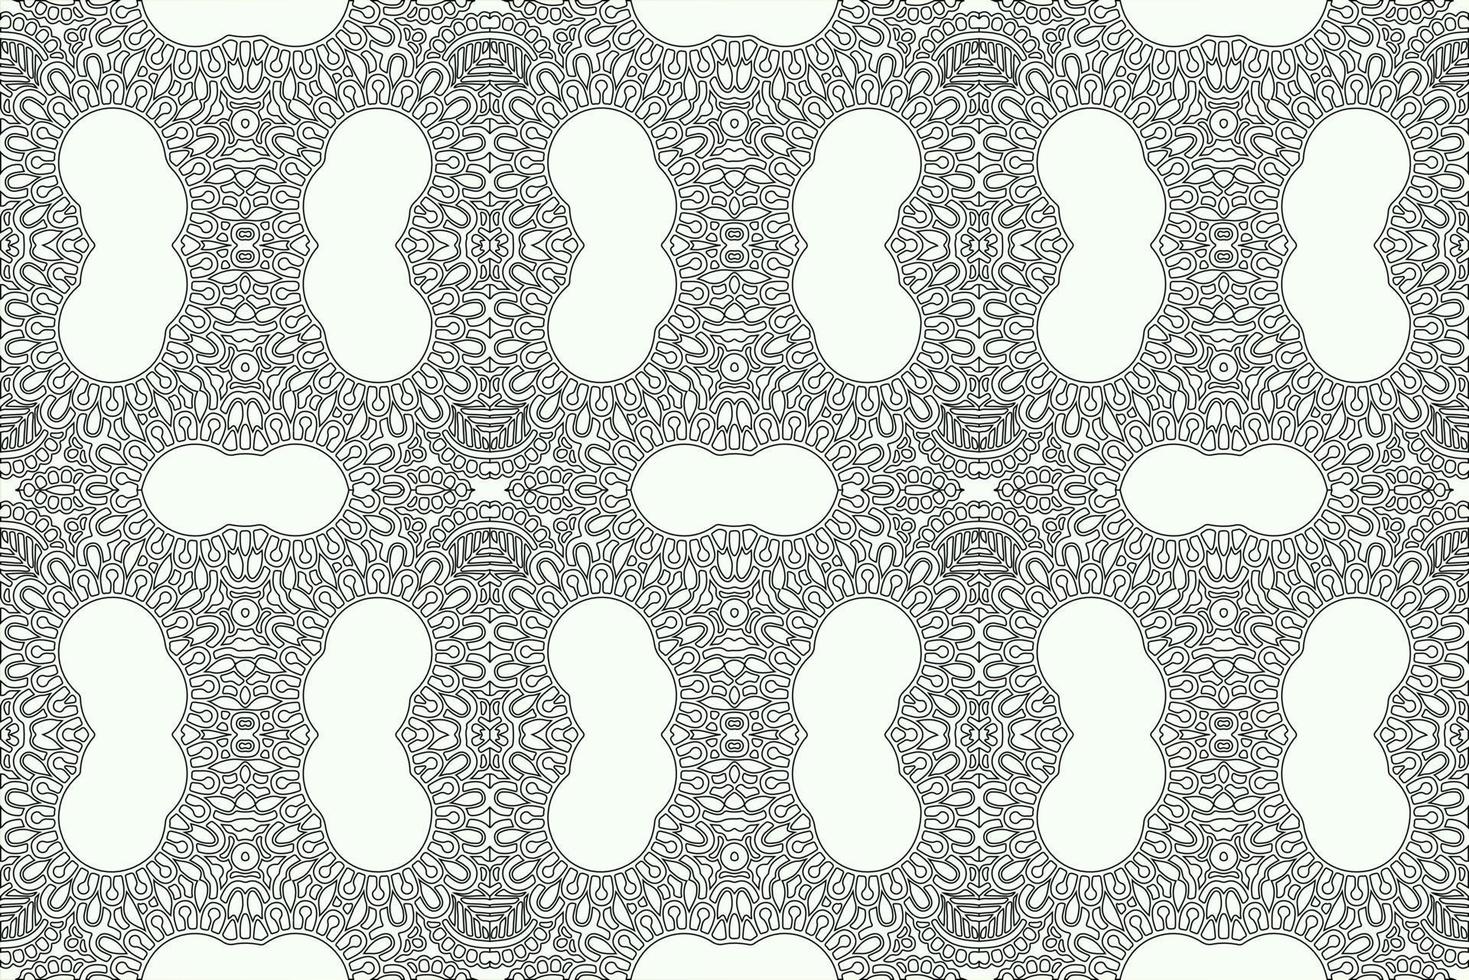 grunge abstrakt mönster vektor